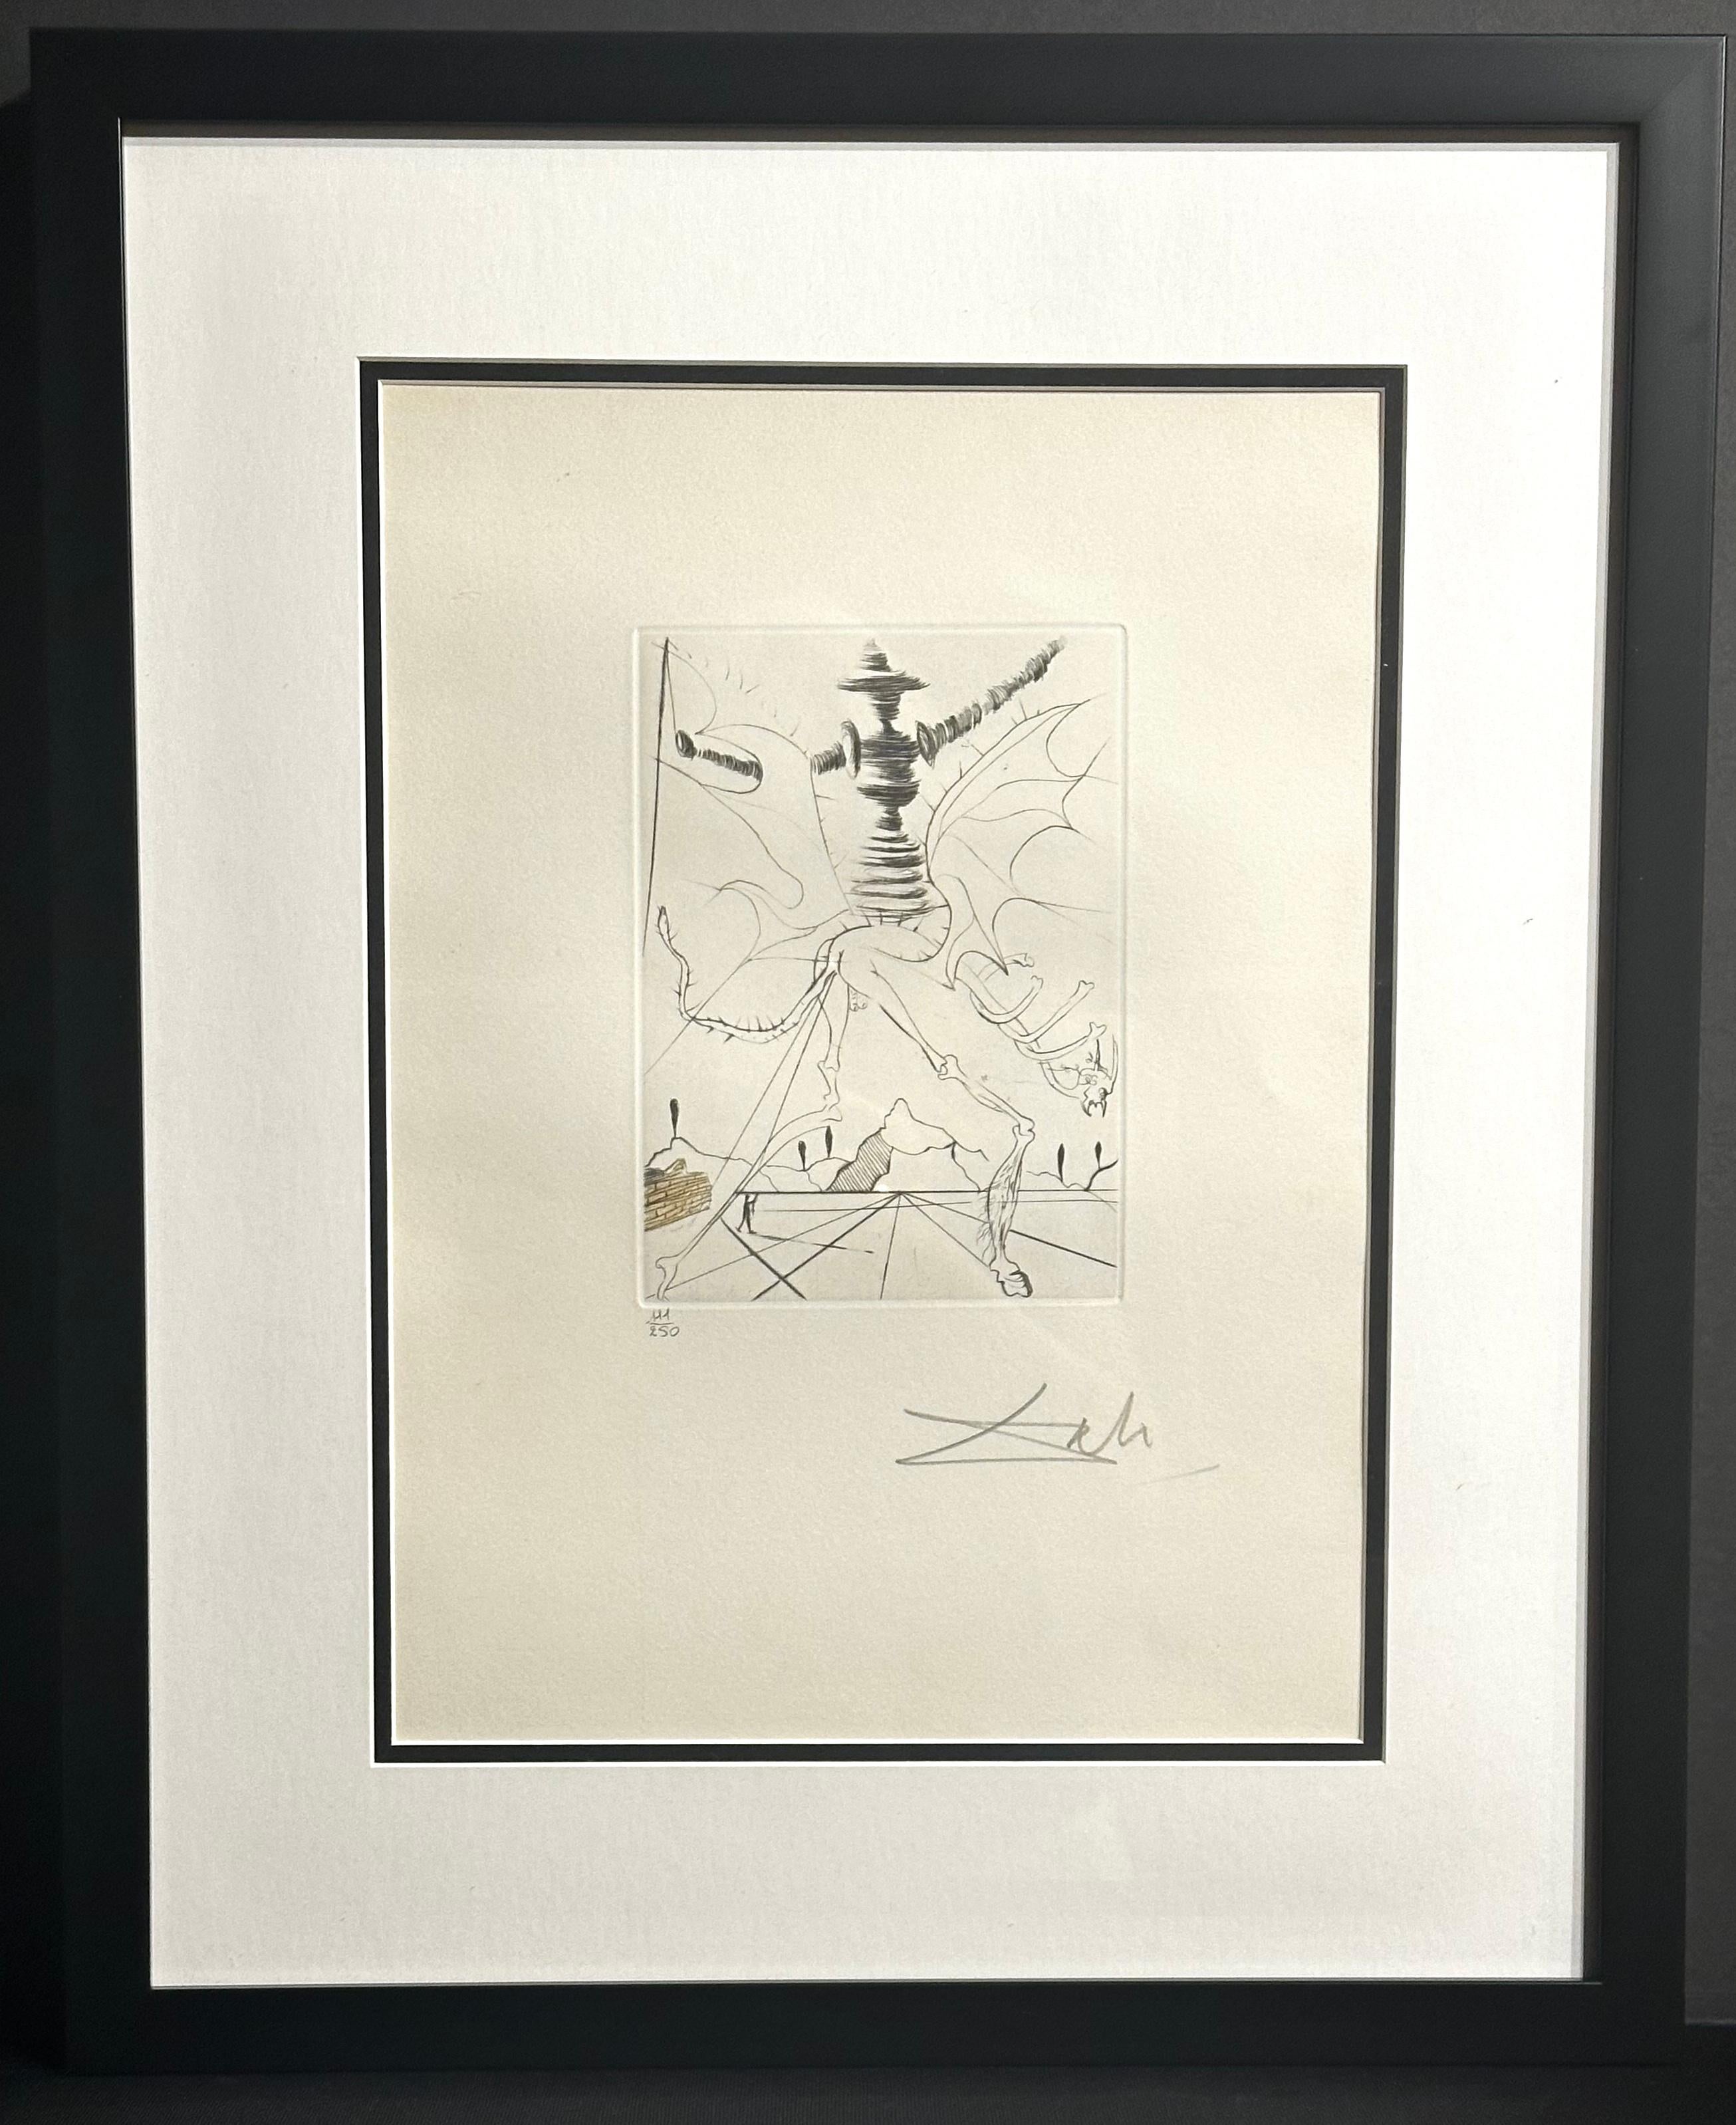 ARTIST: Salvador Dali

TITLE: Shakespeare II Henry VI

MEDIUM: Etching 

SIGNED: Hand Signed by Salvador Dali 

PUBLISHER: Transworld Art/Lionel Praeger/Knoedler/Berggruen

MEASUREMENTS: 17.6